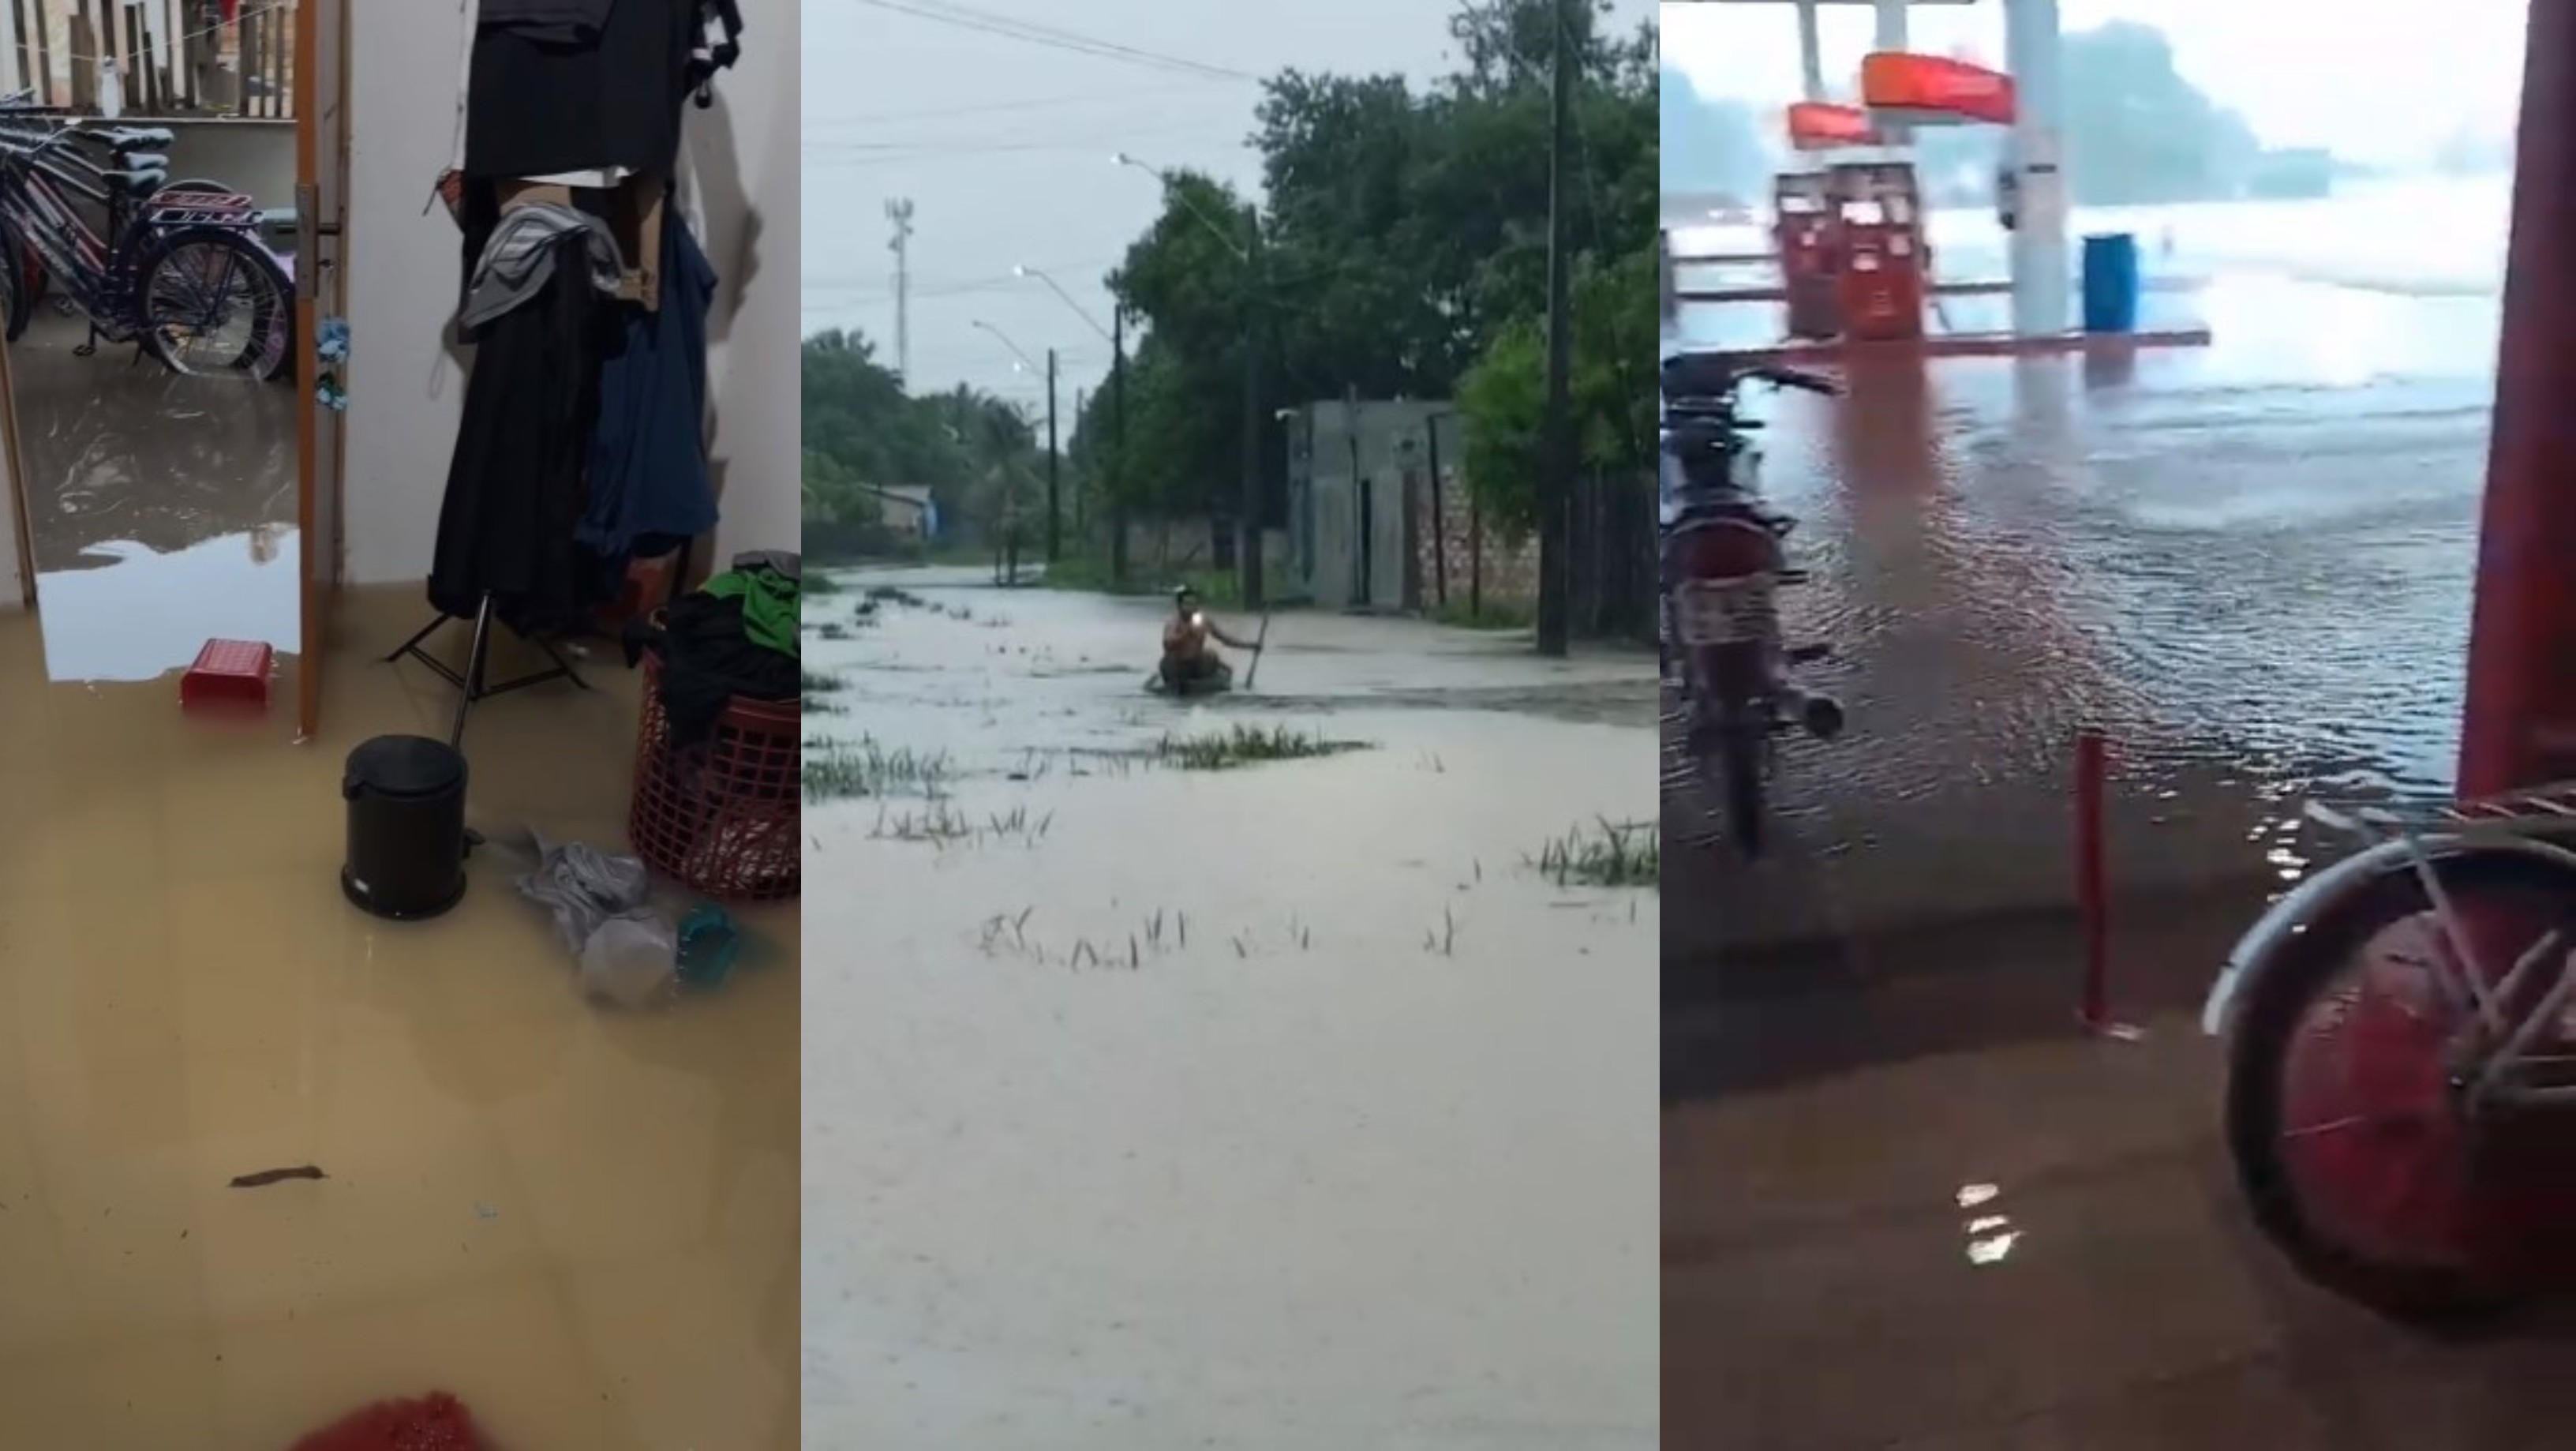 Casa fica alagada, posto de gasolina inundado e morador anda de canoa em rua submersa após fortes chuvas em Caracaraí